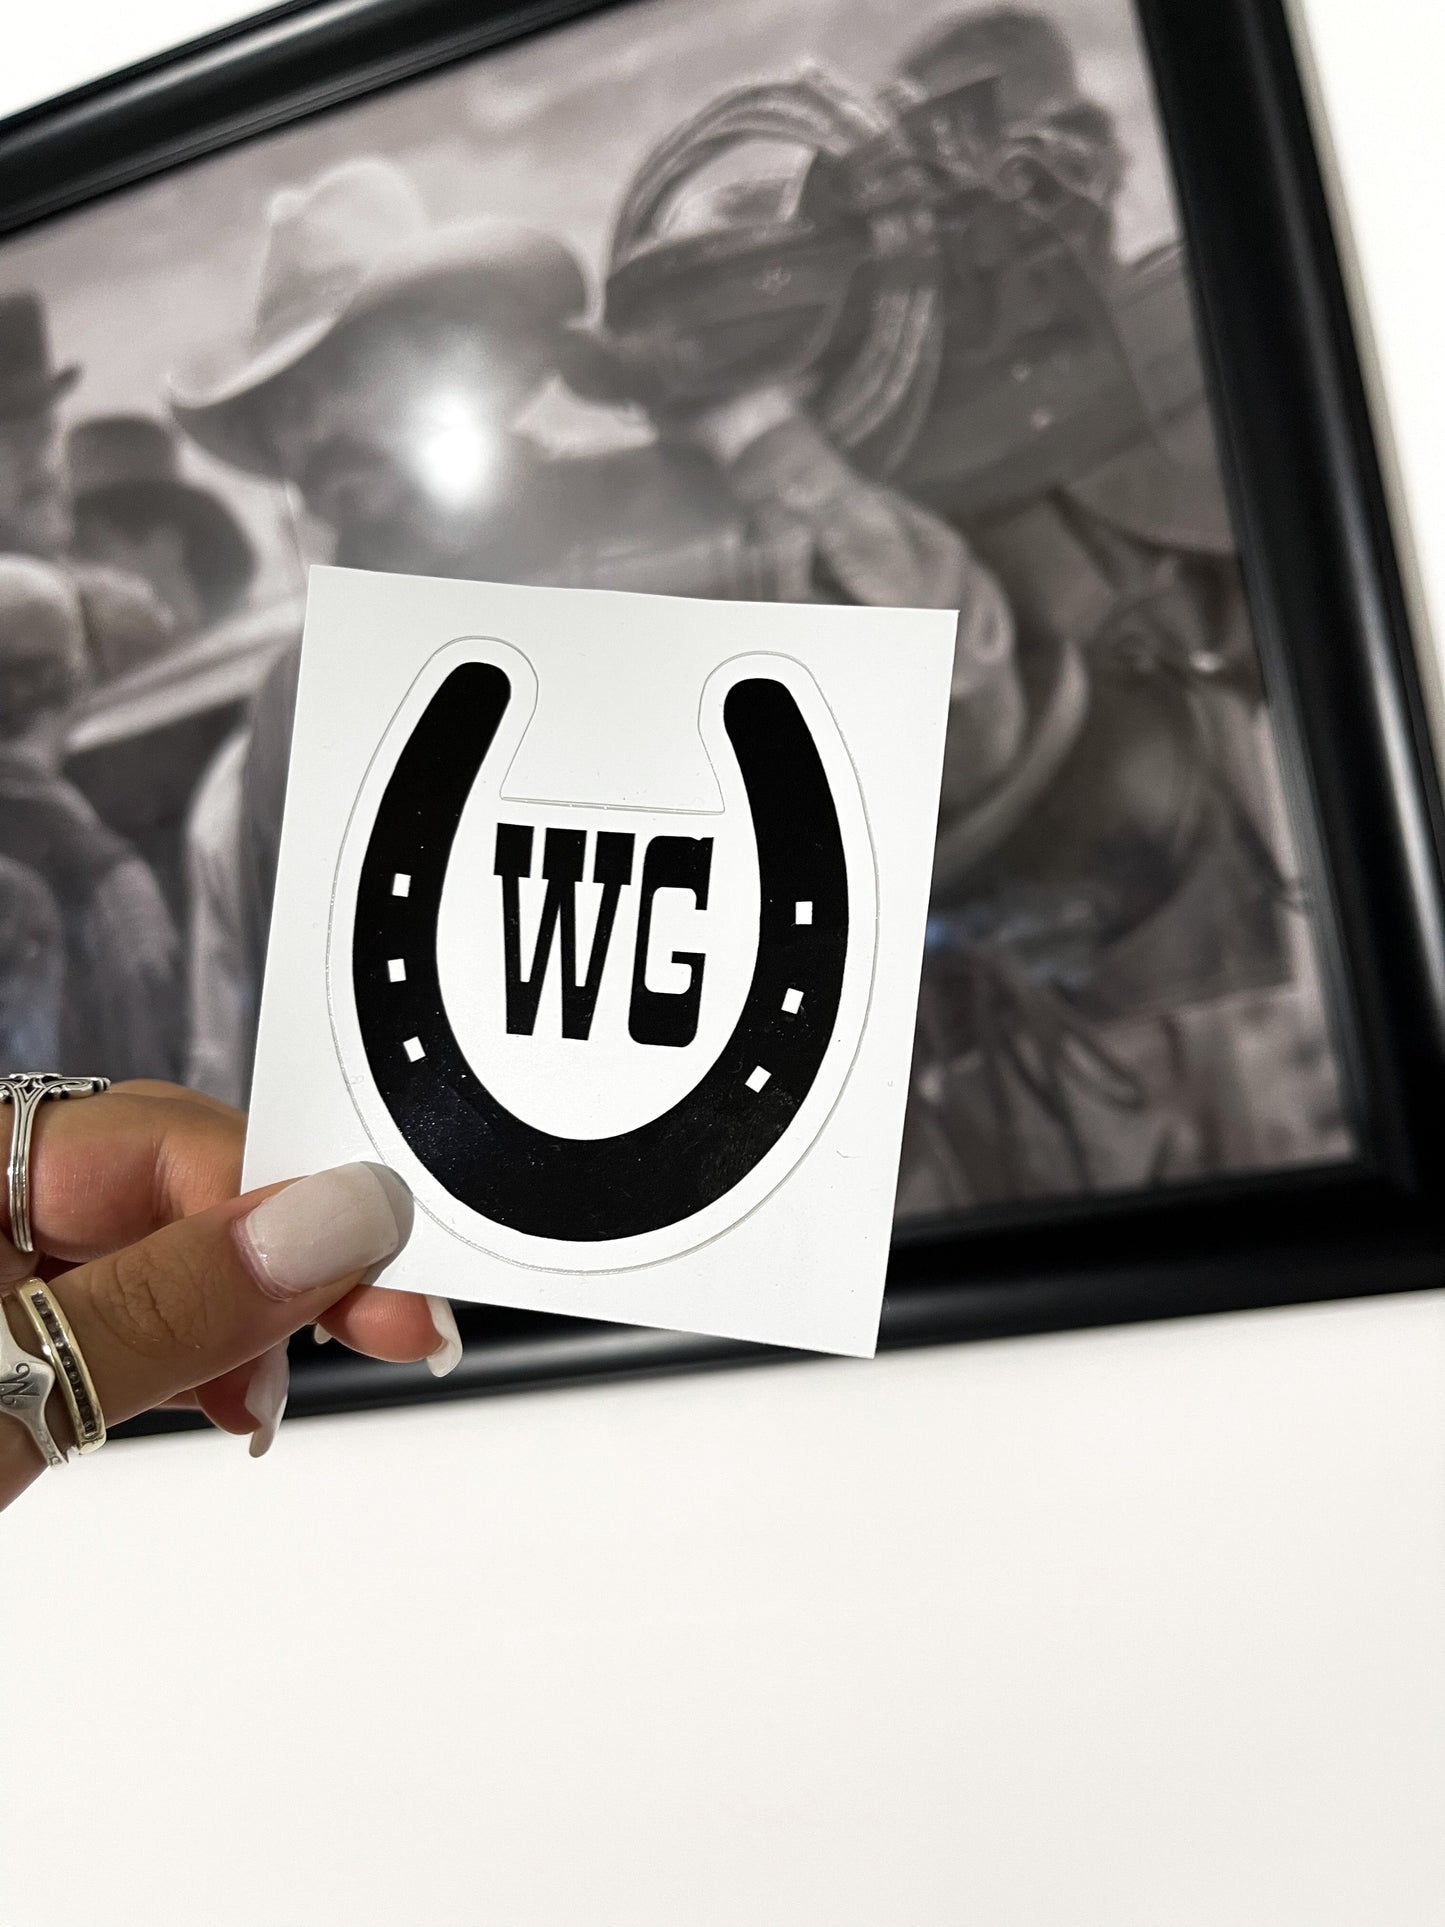 WG horseshoe logo sticker